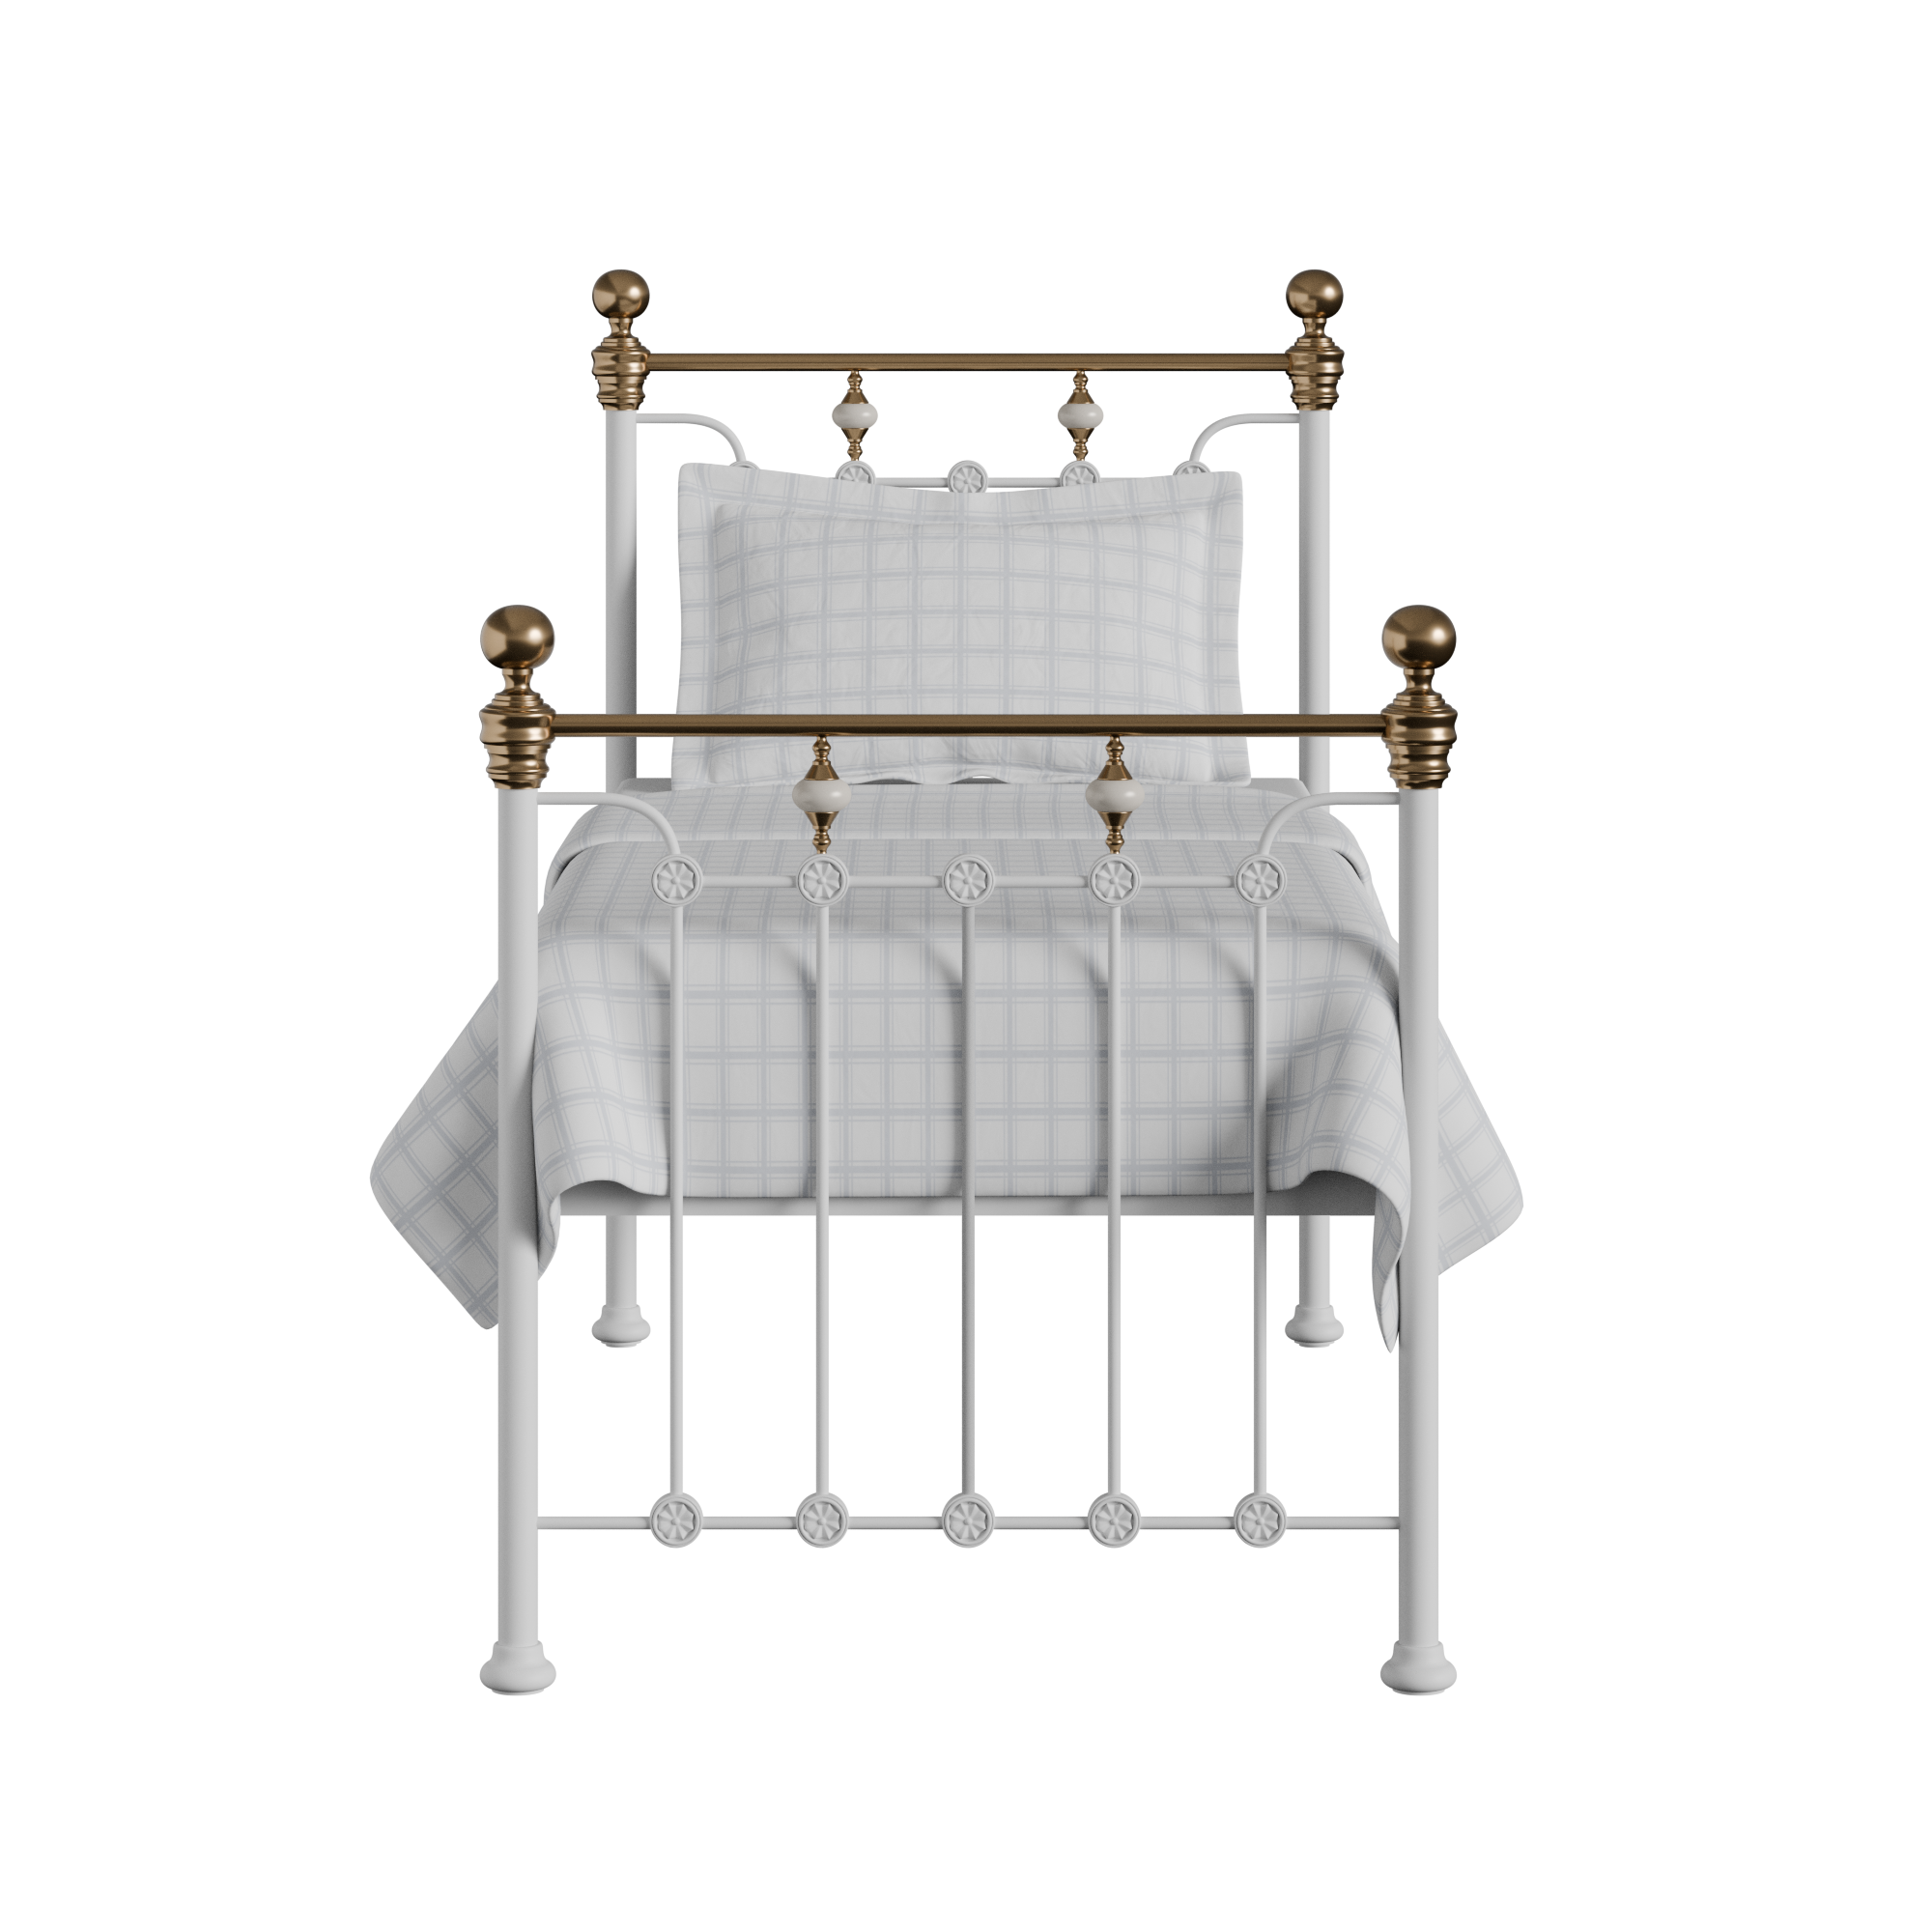 Glenholm iron/metal single bed in white